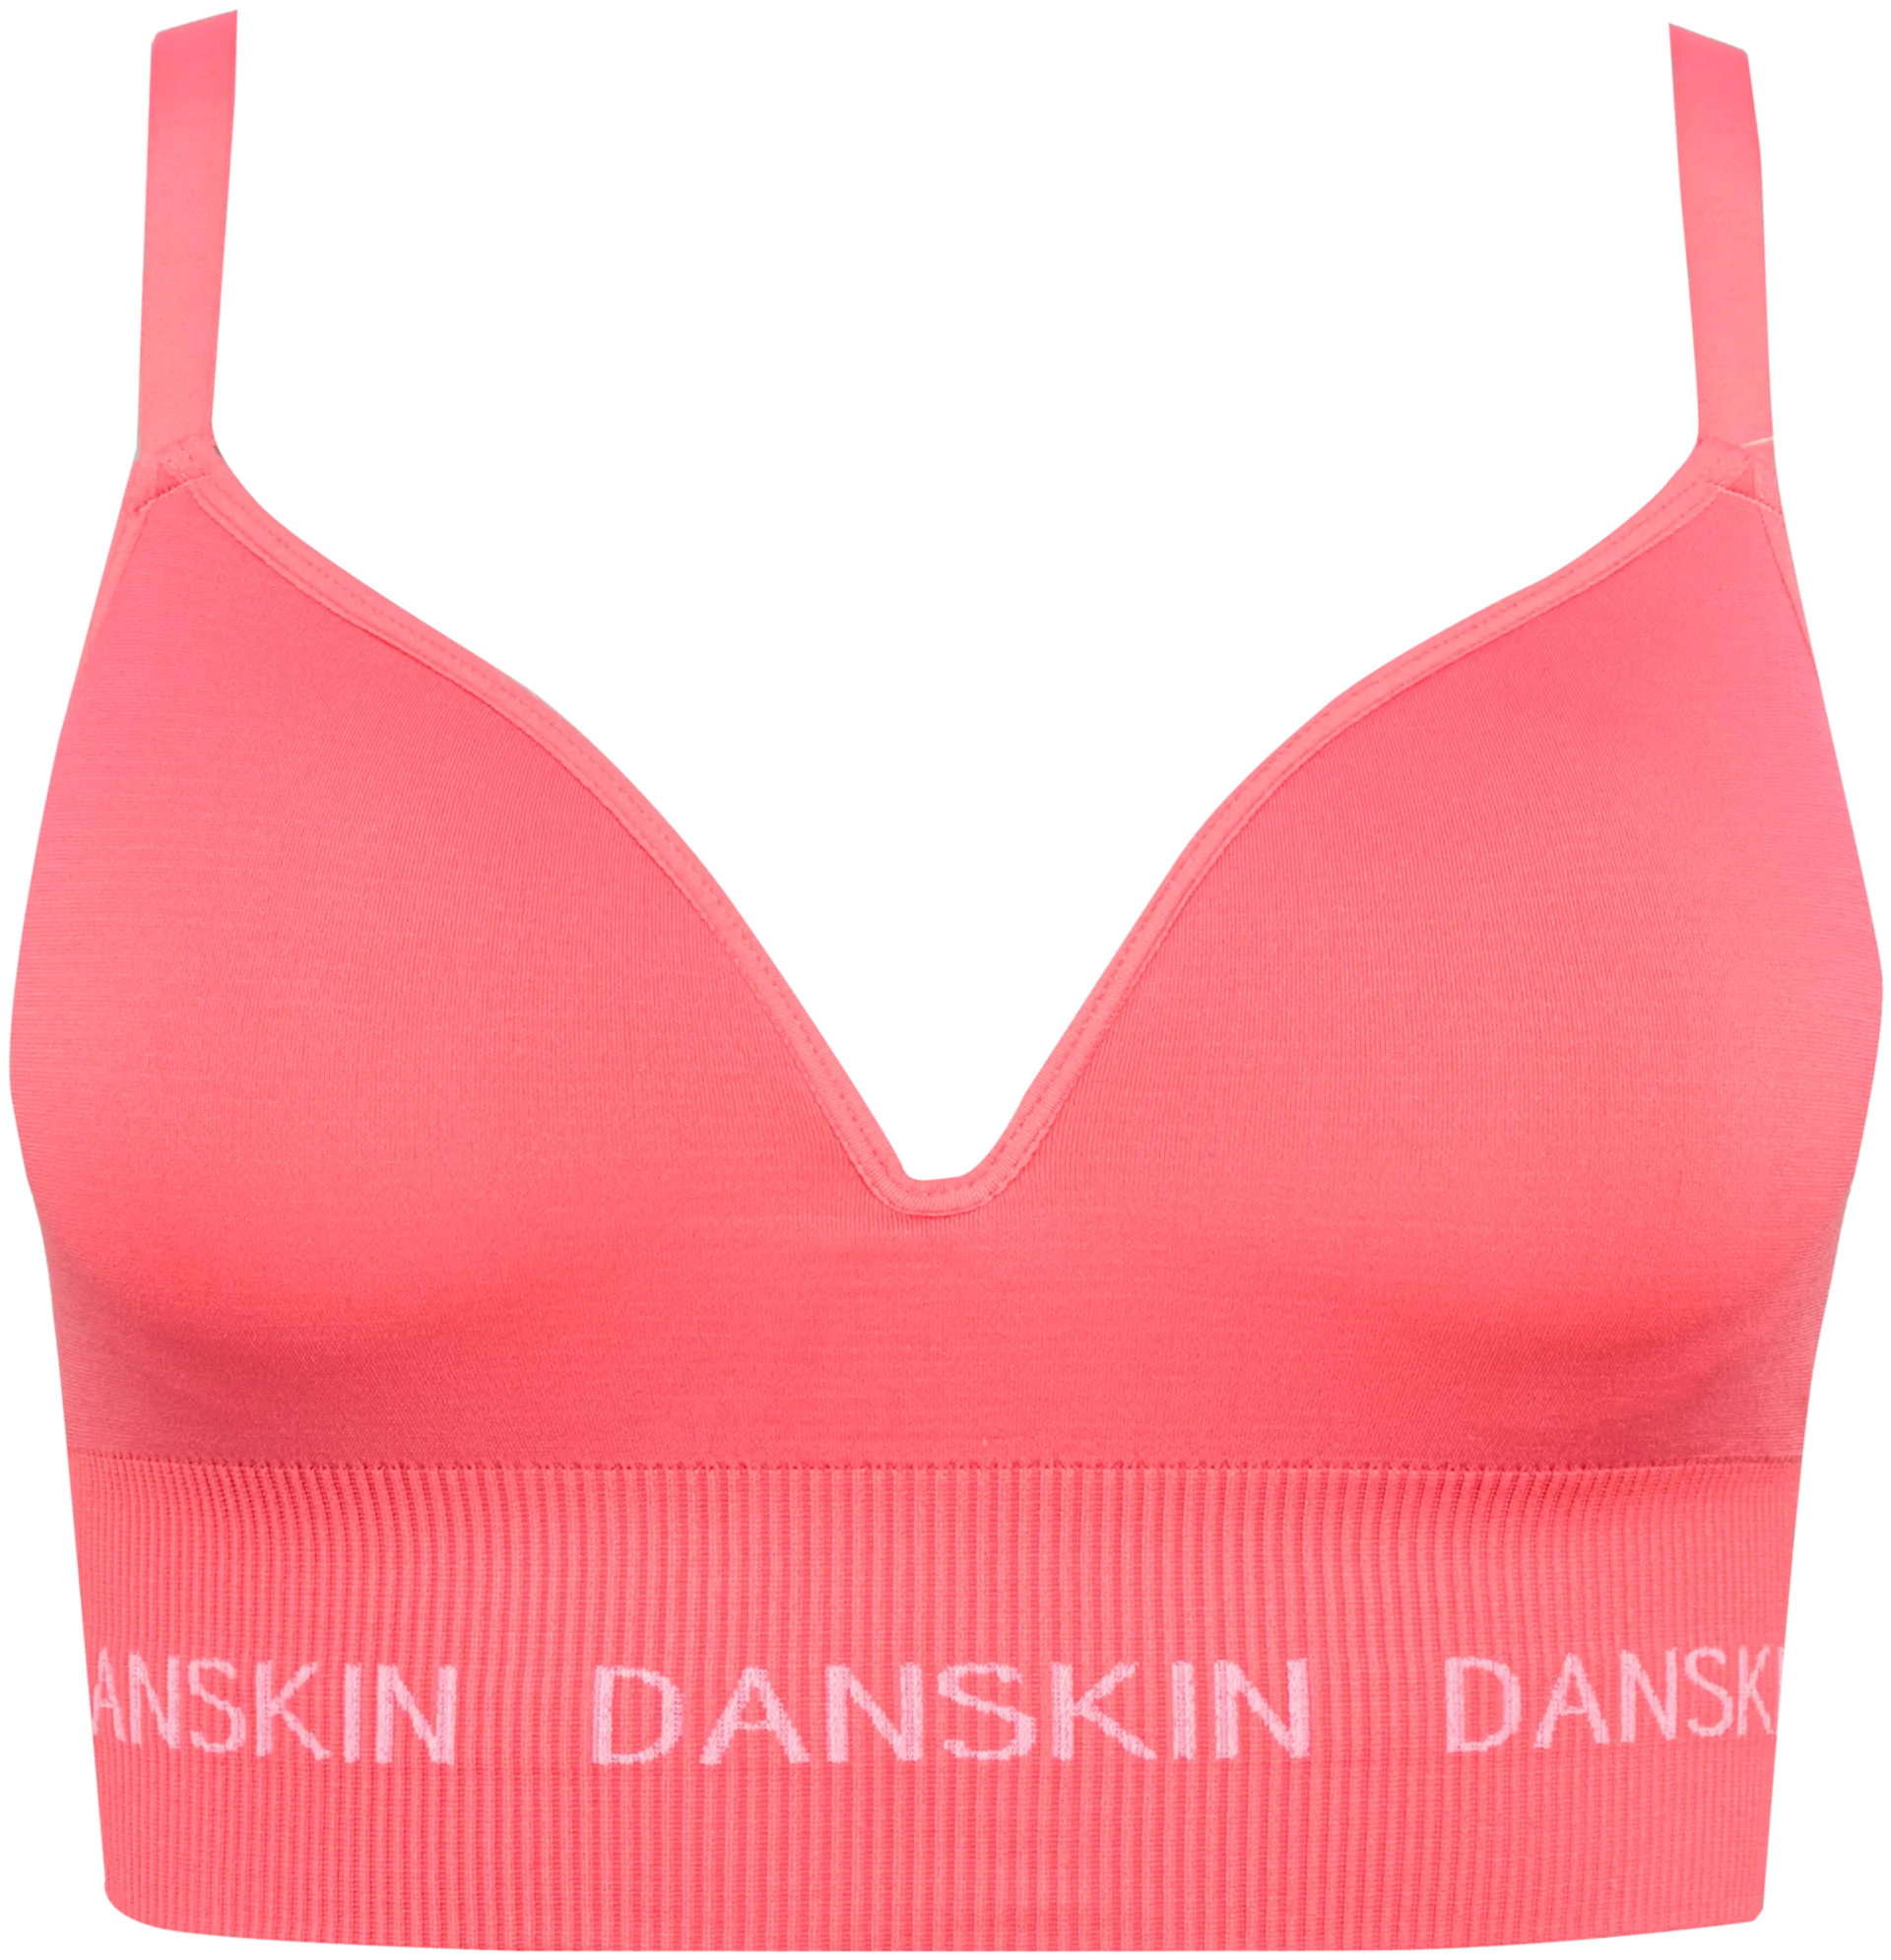 Danskin naisten bralette-rintaliivit 93945 - Pink Lemonade - 1